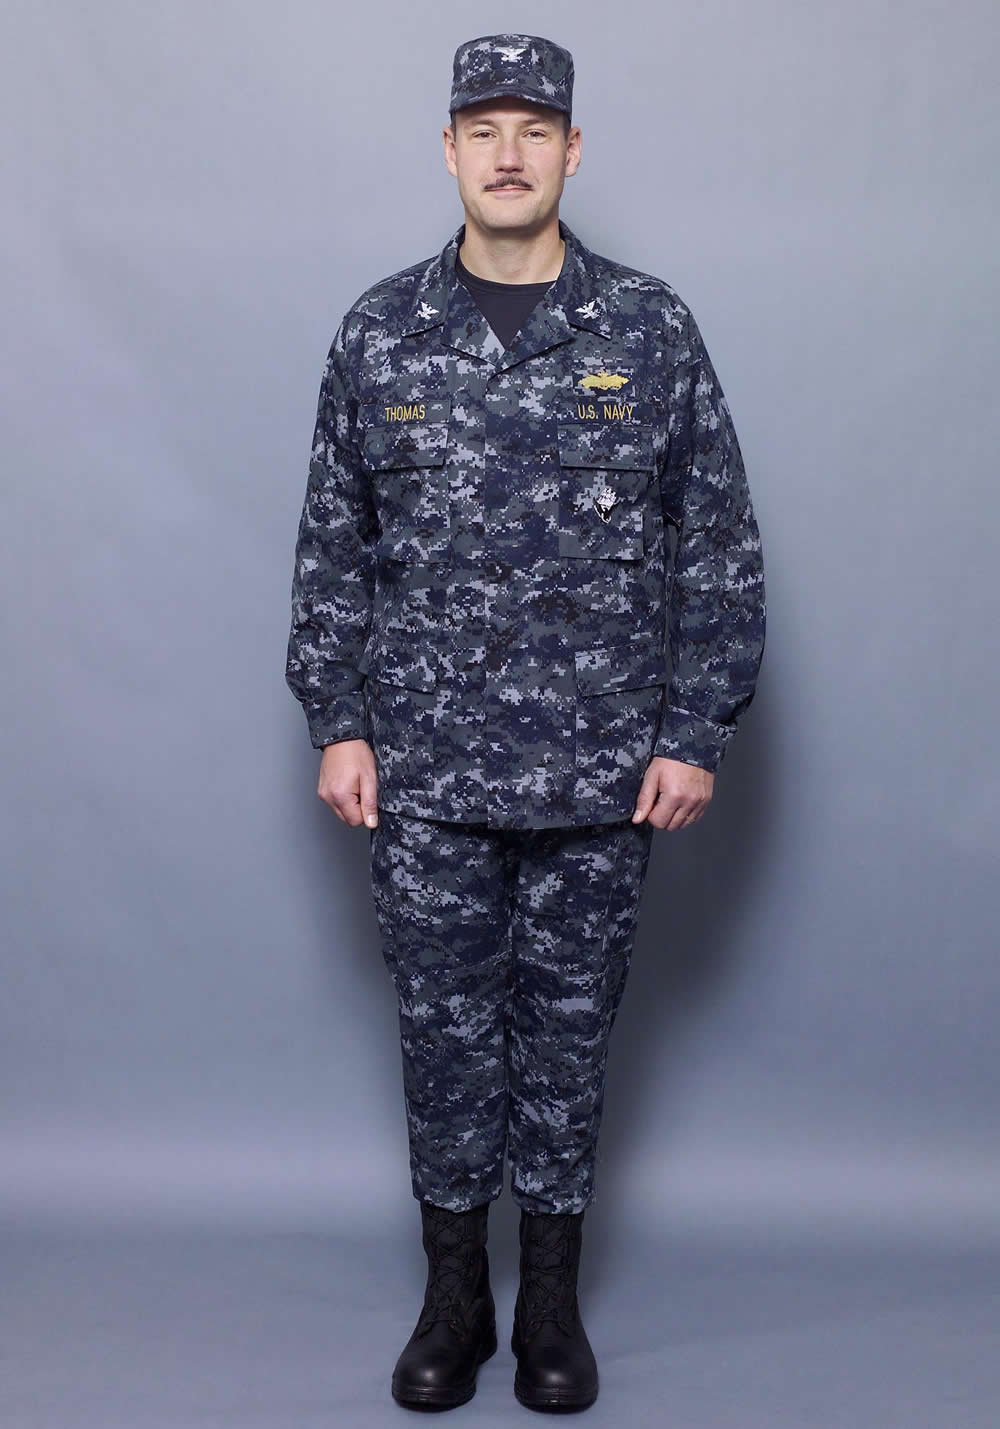 Navy Uniforms Navy Uniforms News